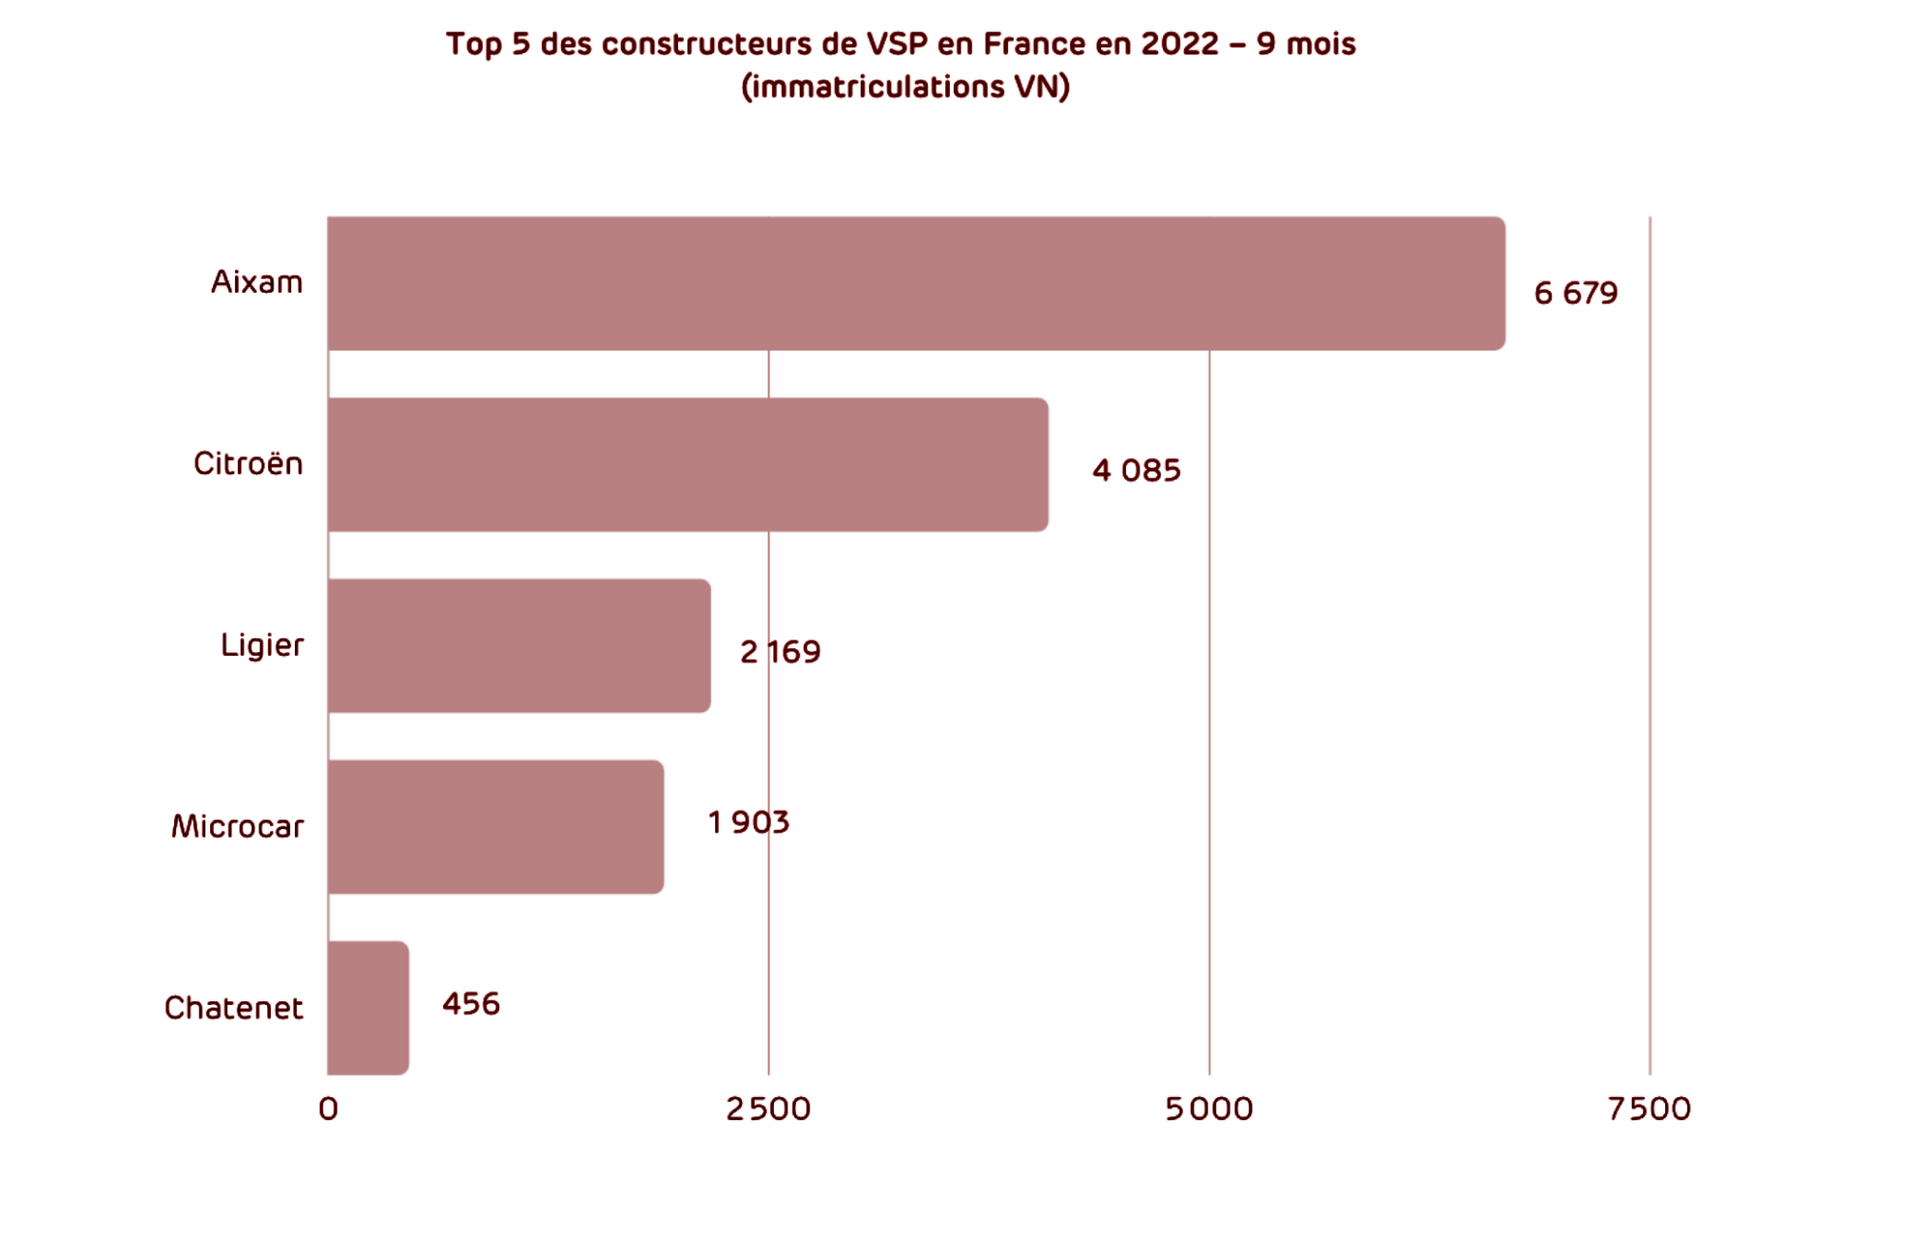 Top 5 constructeurs de VSP en France au 1 octobre 2022